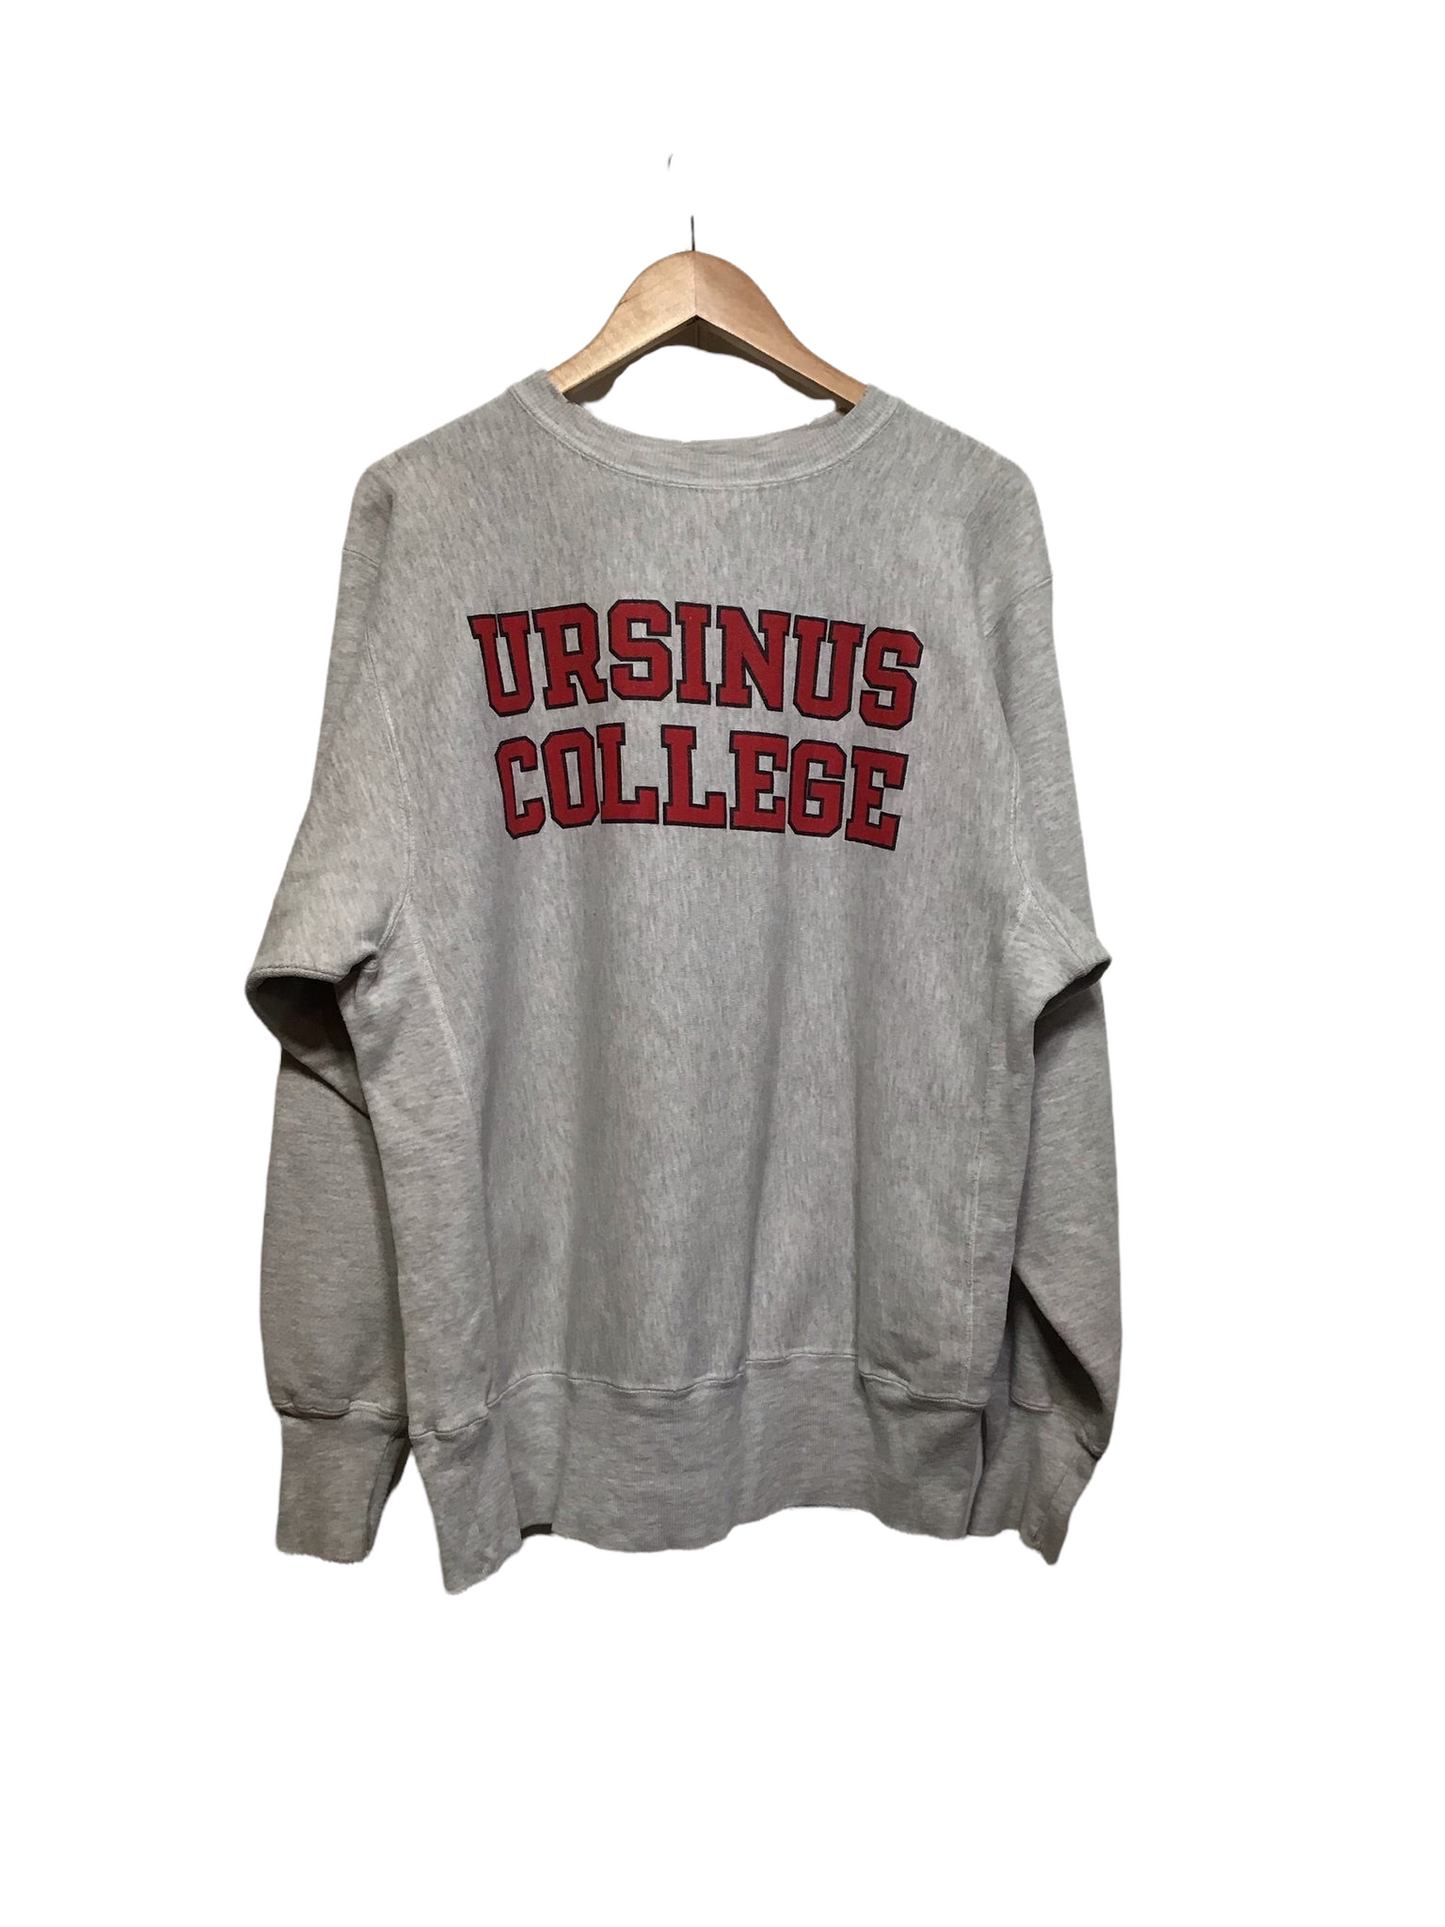 Ursinus College Sweatshirt (Size XL)